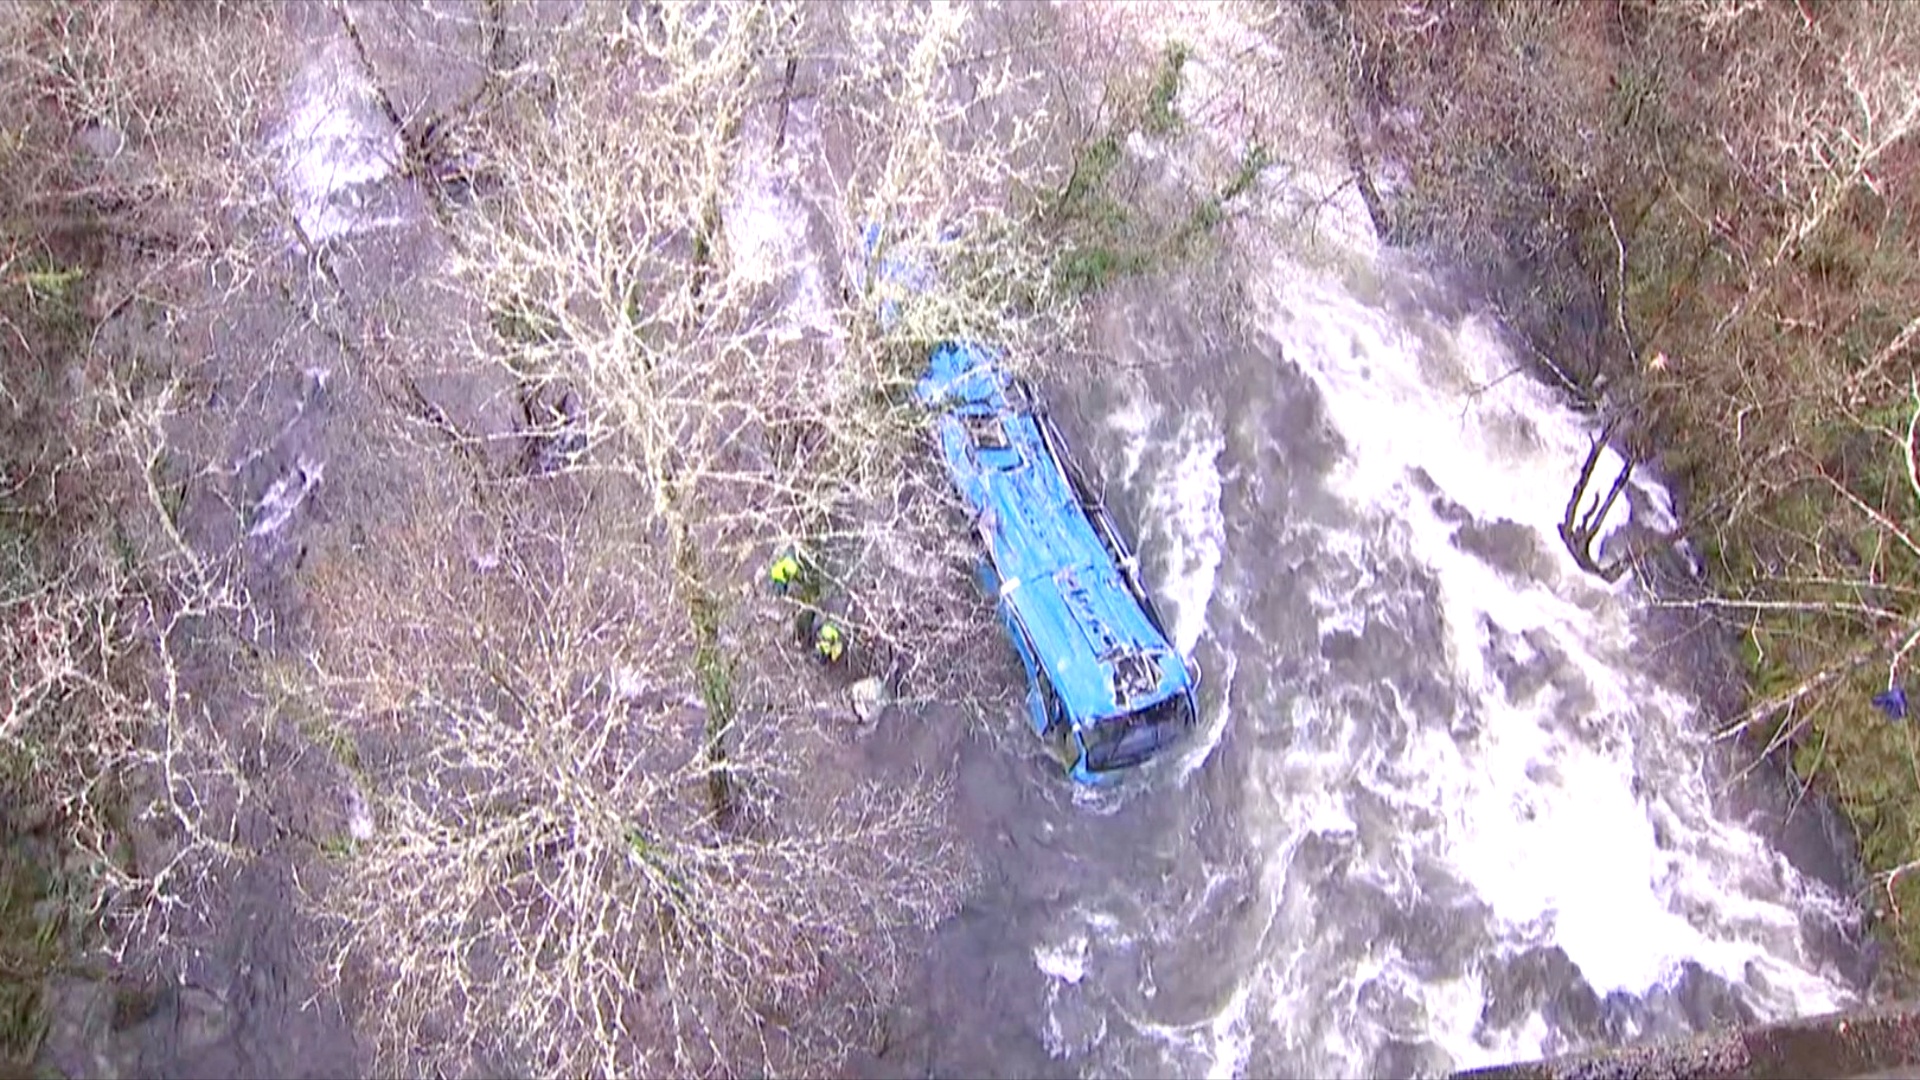 Автобус сорвался с моста высотой 30 м и упал в реку в Испании